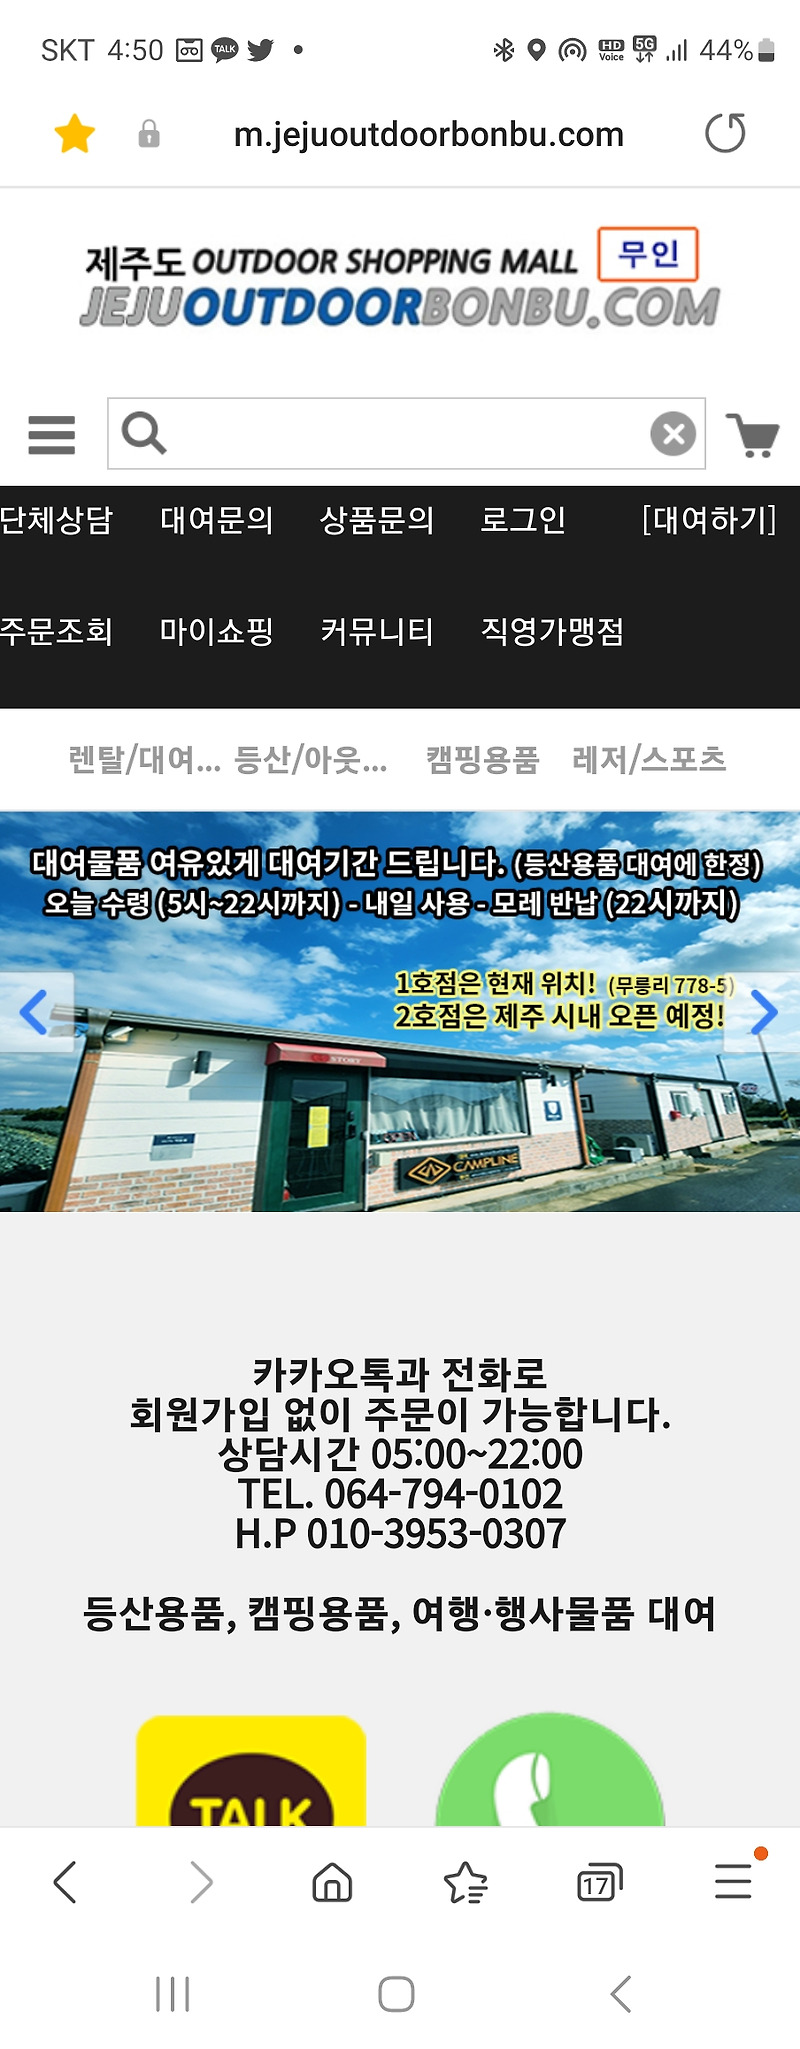 ㅎ[제주도] 한라산 등산화 대여 전문점 아웃도어본부닷컴 (무인매장)